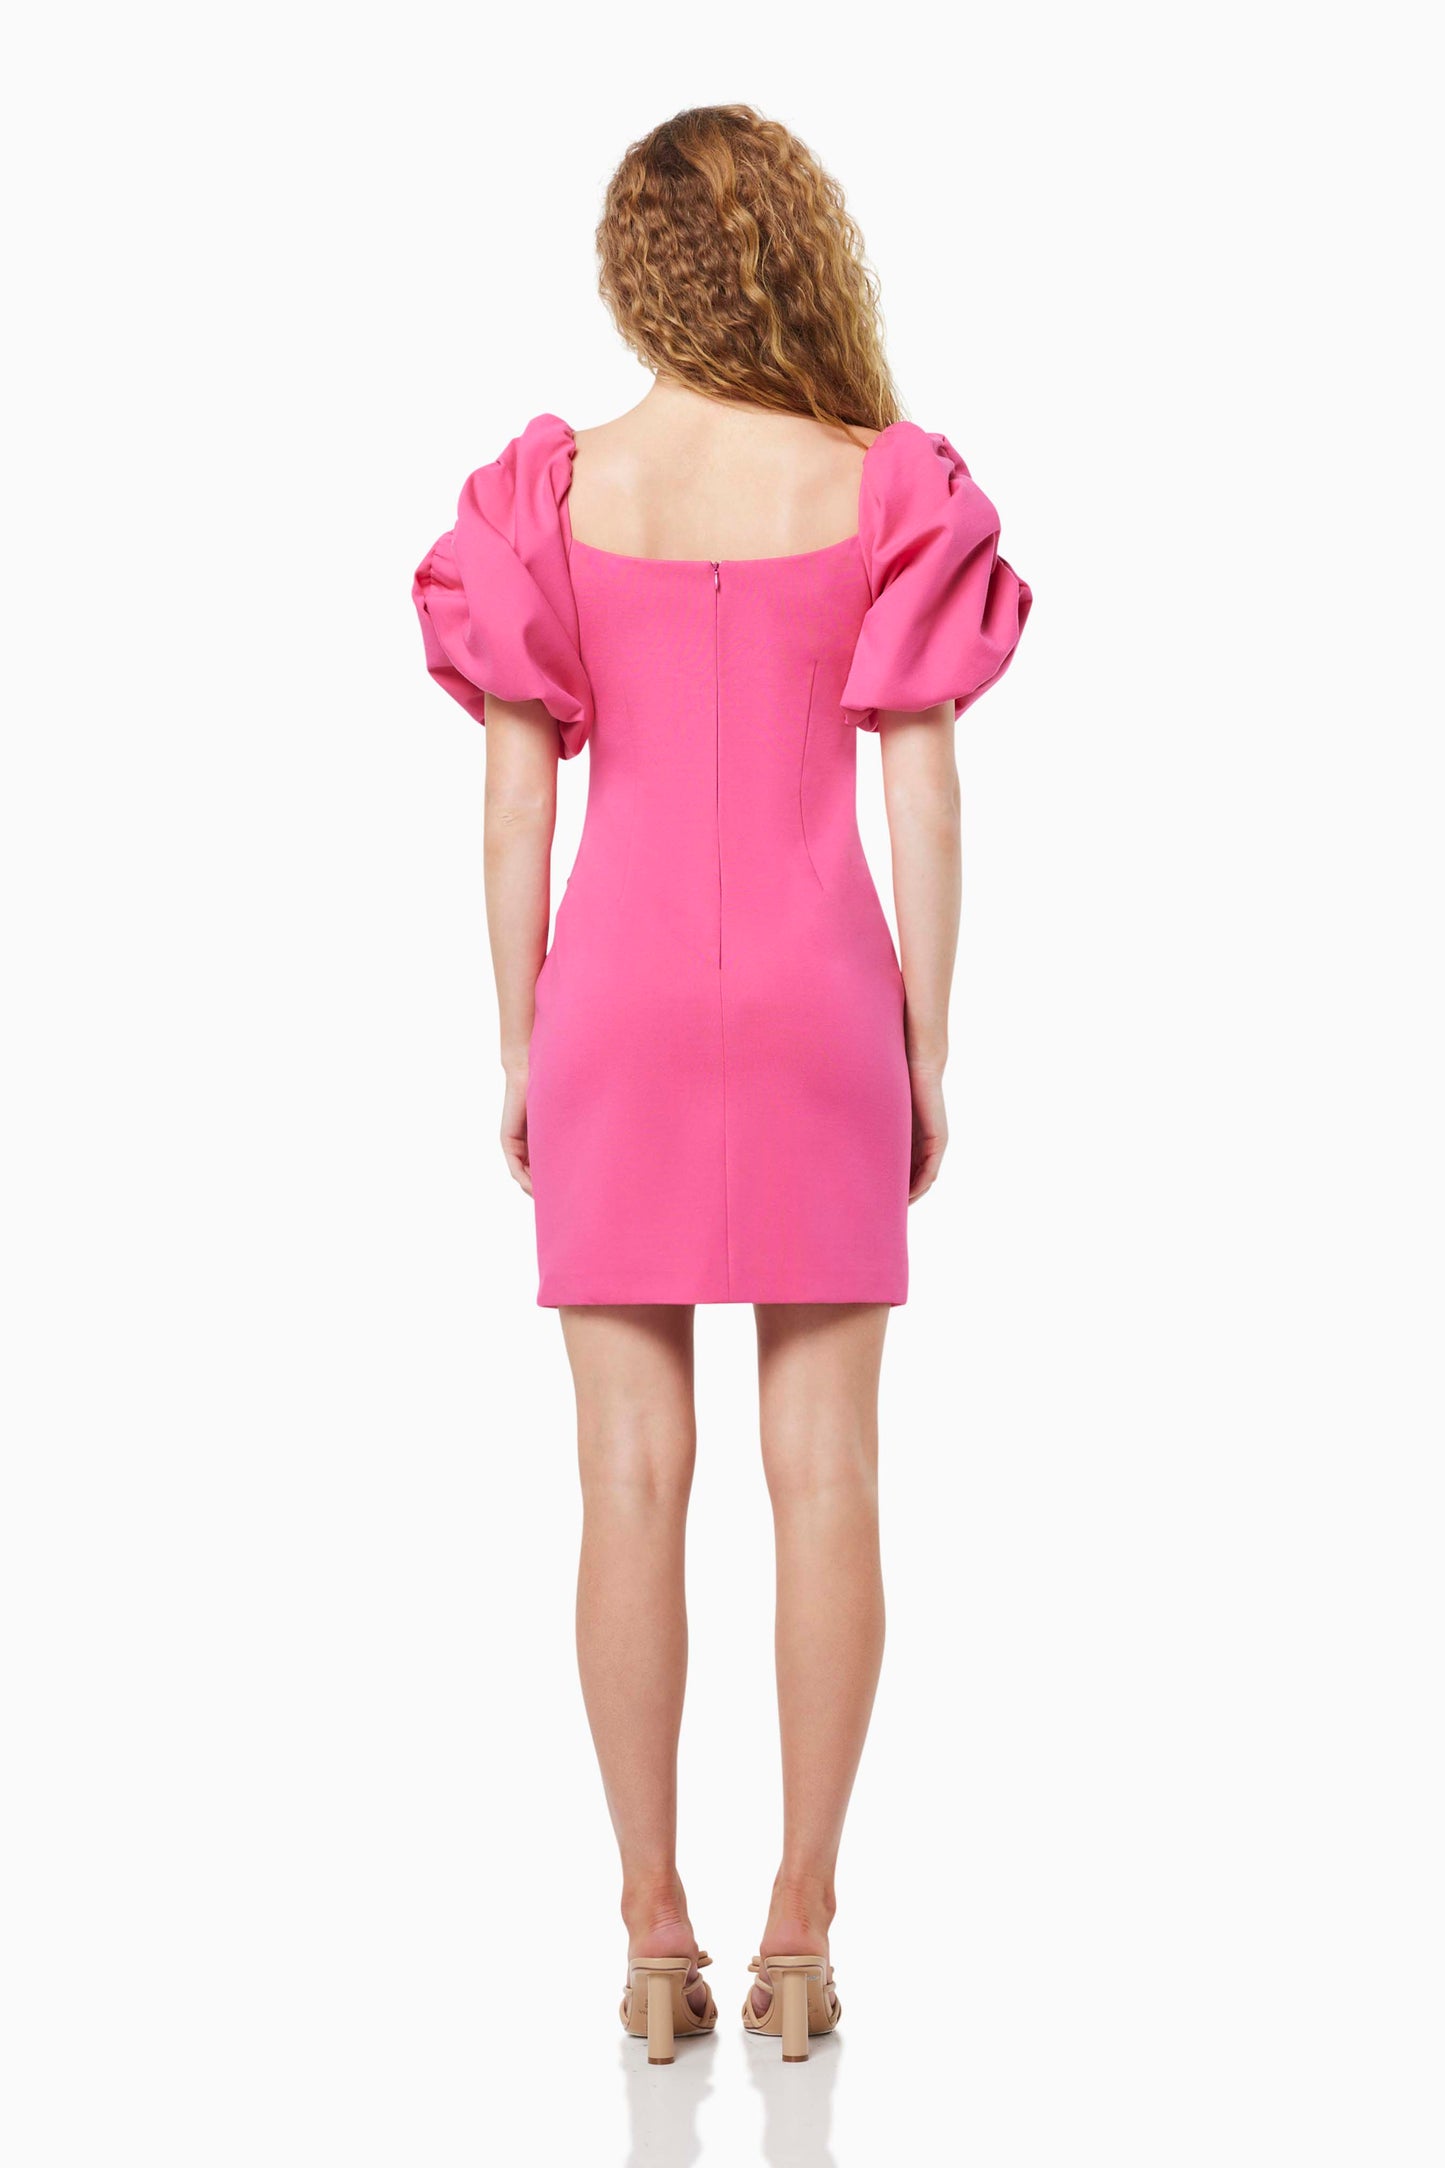 Zany Dress in Pink